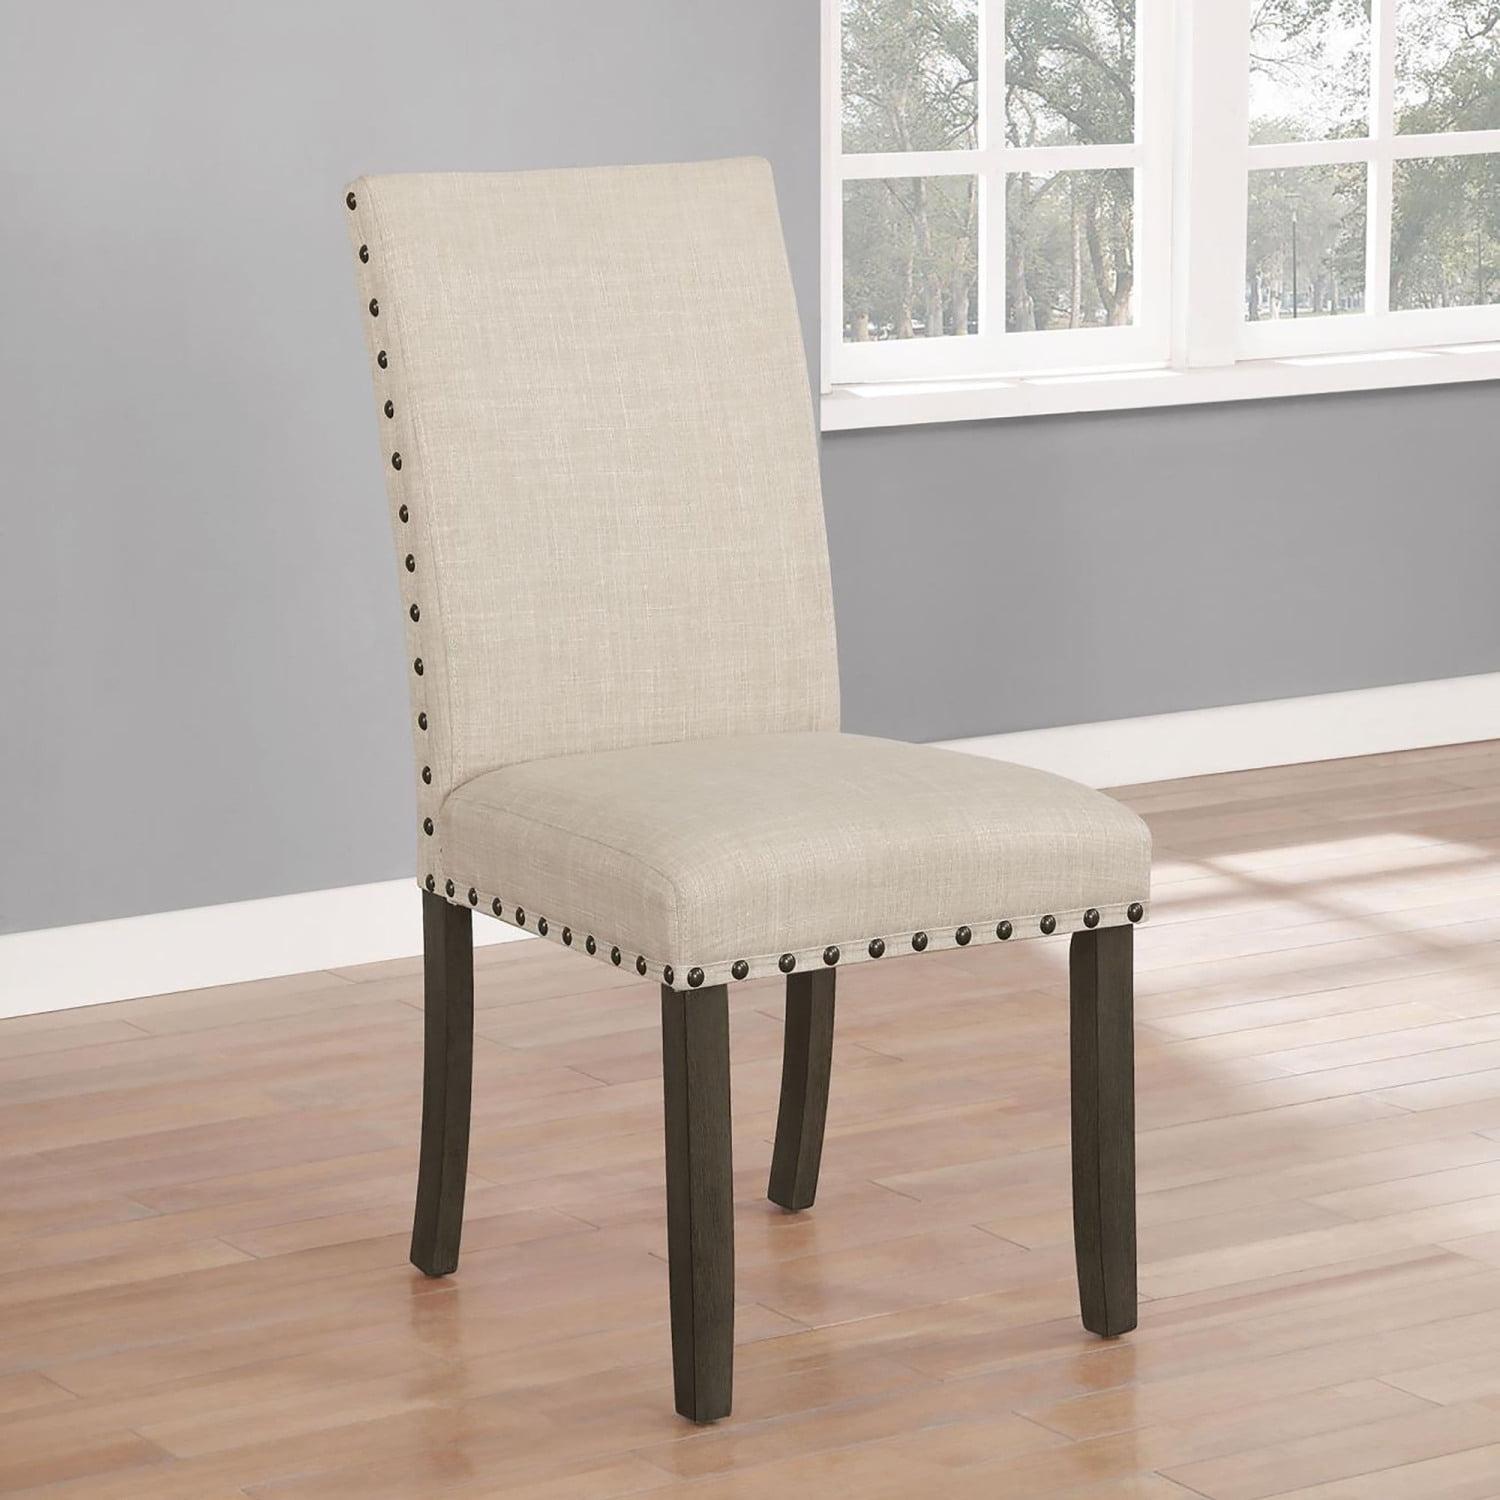 Elegant Beige Upholstered Parsons Side Chair in Rustic Brown Wood